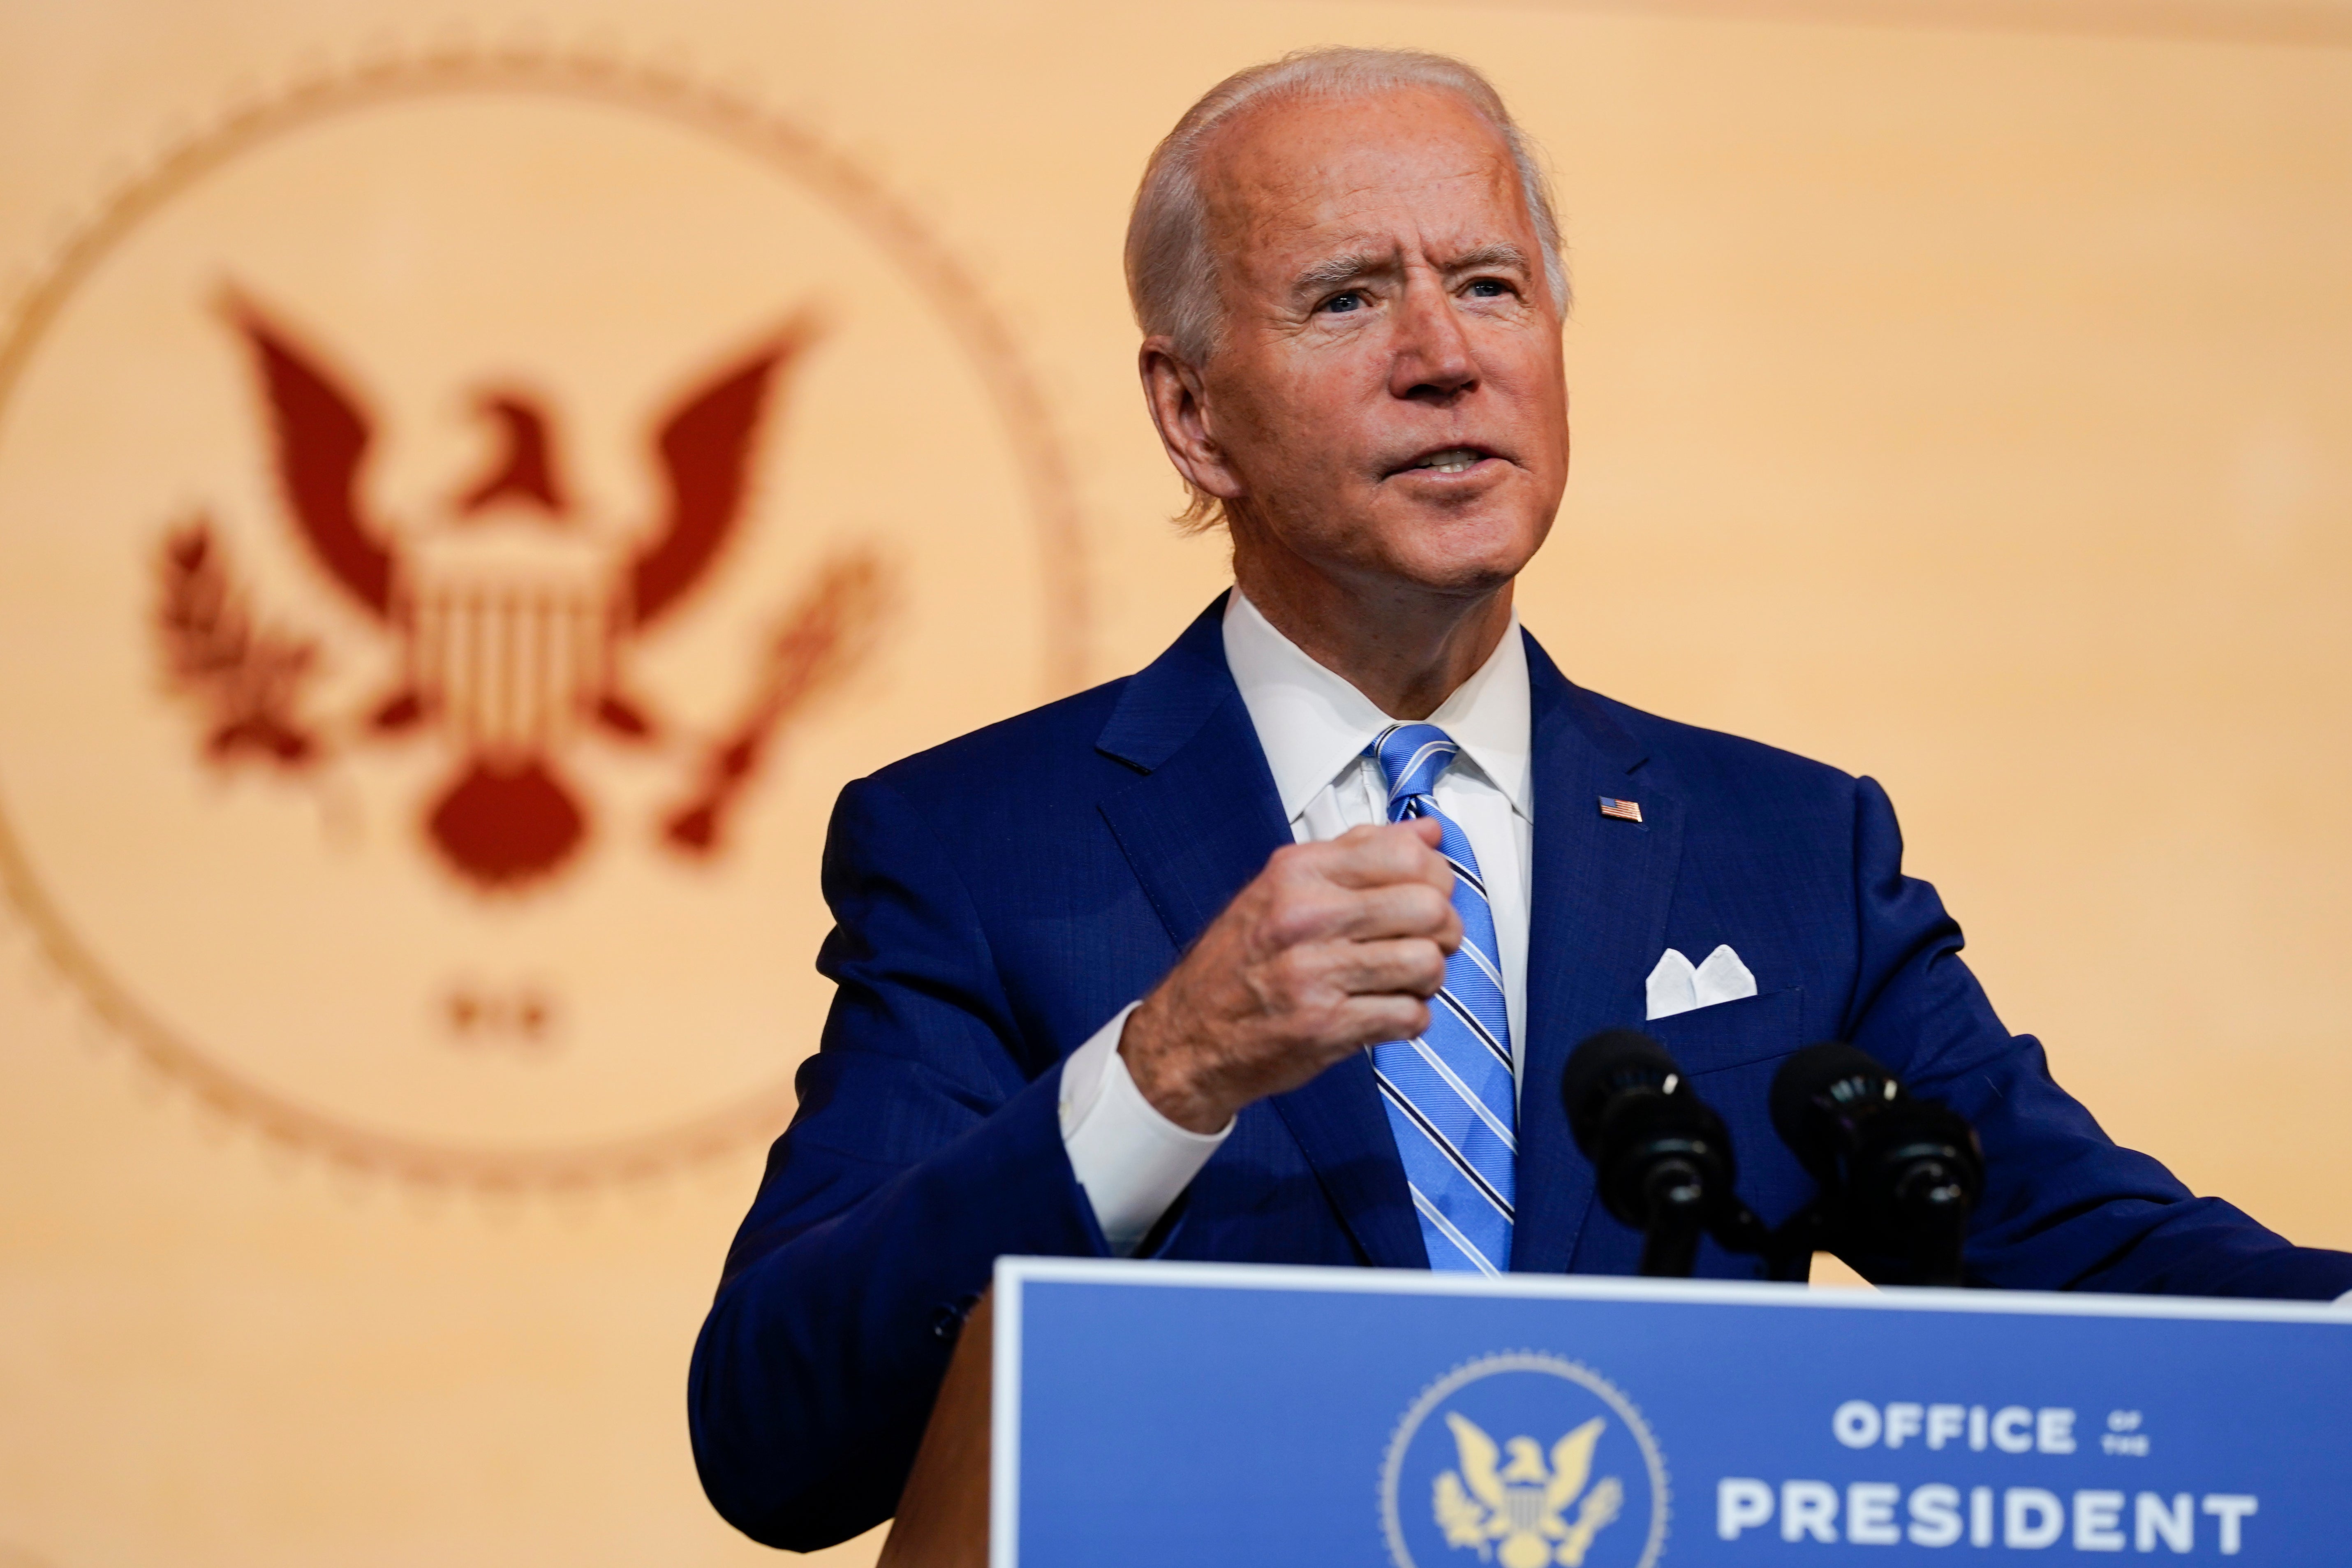 El presidente electo Joe Biden pronuncia un discurso el día antes del Día de Acción de Gracias, el 25 de noviembre.